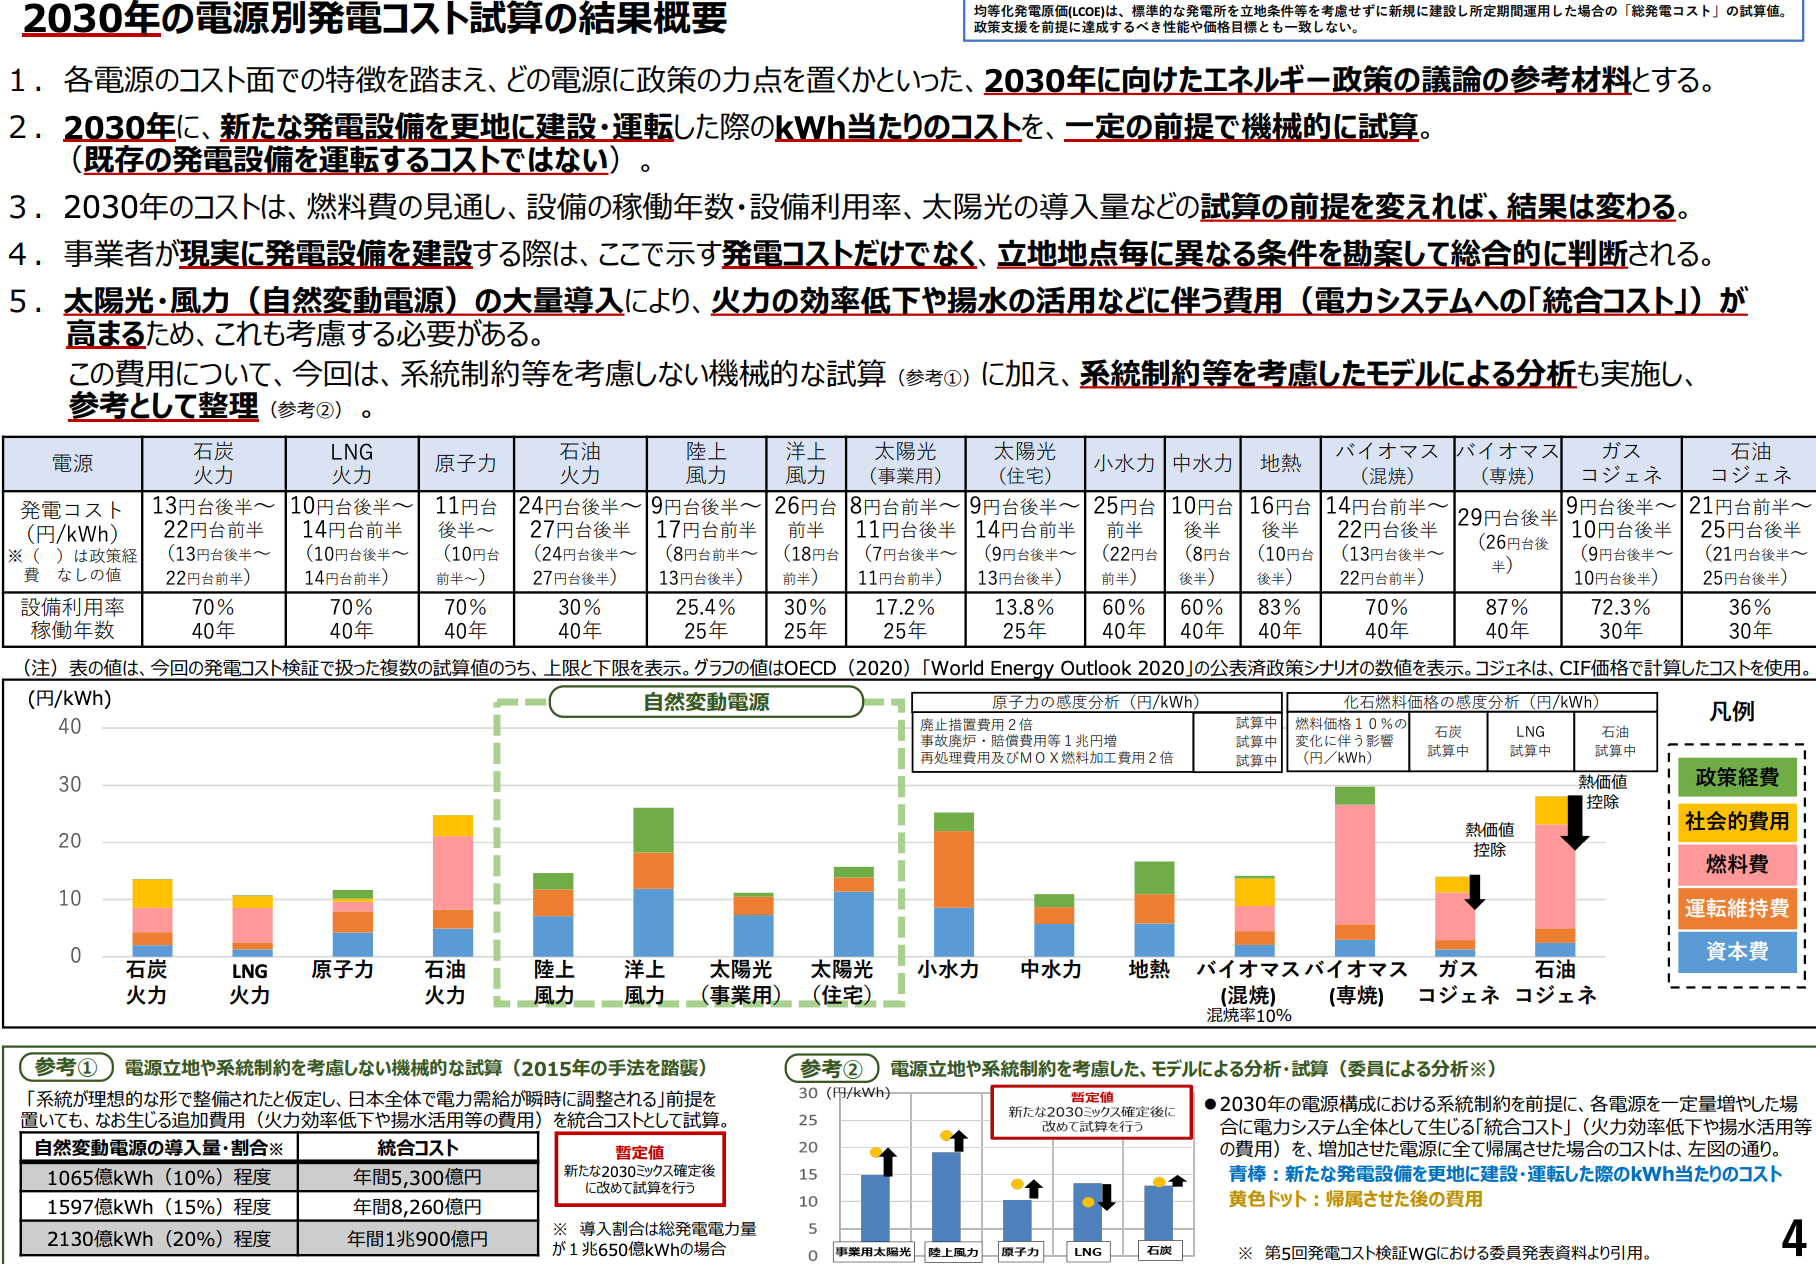 【日本】エネ庁、2030年の発電コスト試算発表。太陽光が最安で原発を下回る。日本初 2